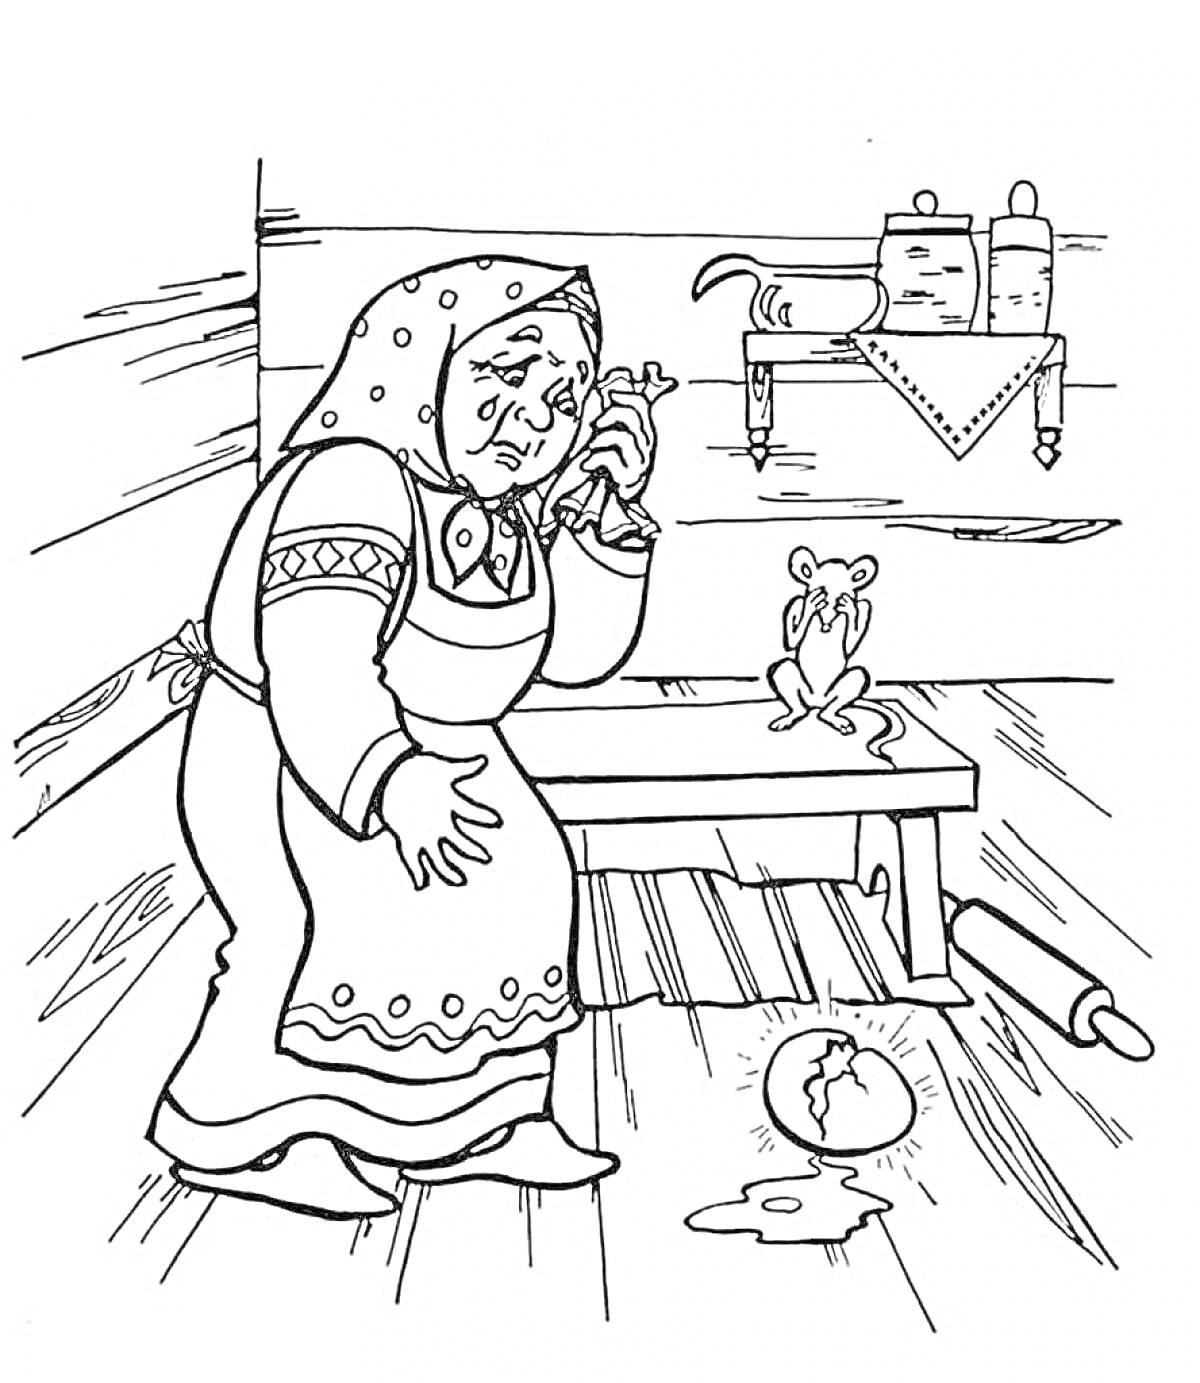 Раскраска Старушка с платком и лягушкой на лавке пьет воду, упавшая посуда и скалка, чайник и баночки на полке